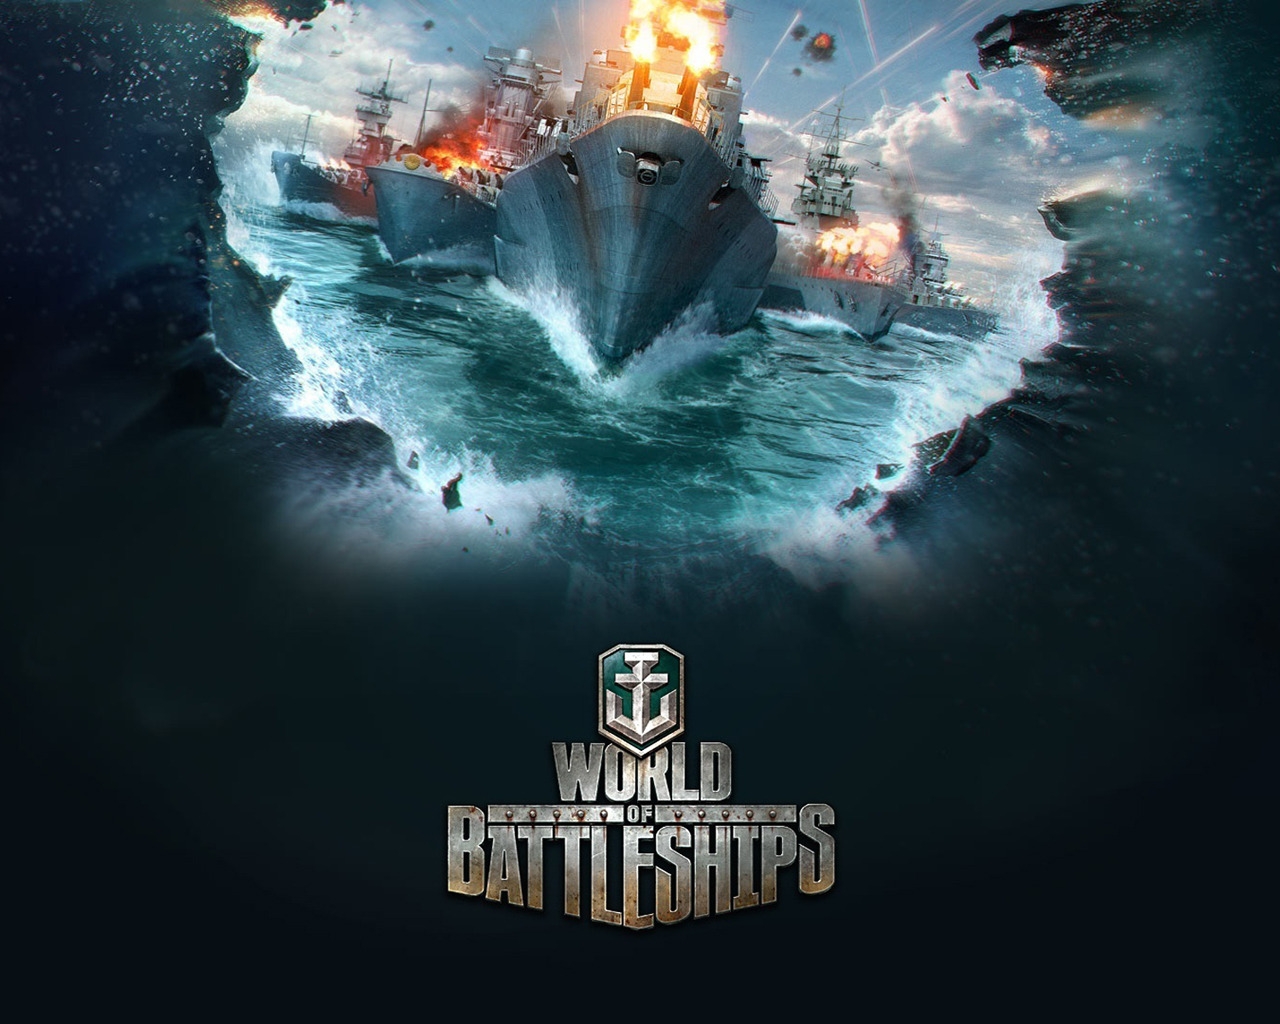 World of Battleships for 1280 x 1024 resolution